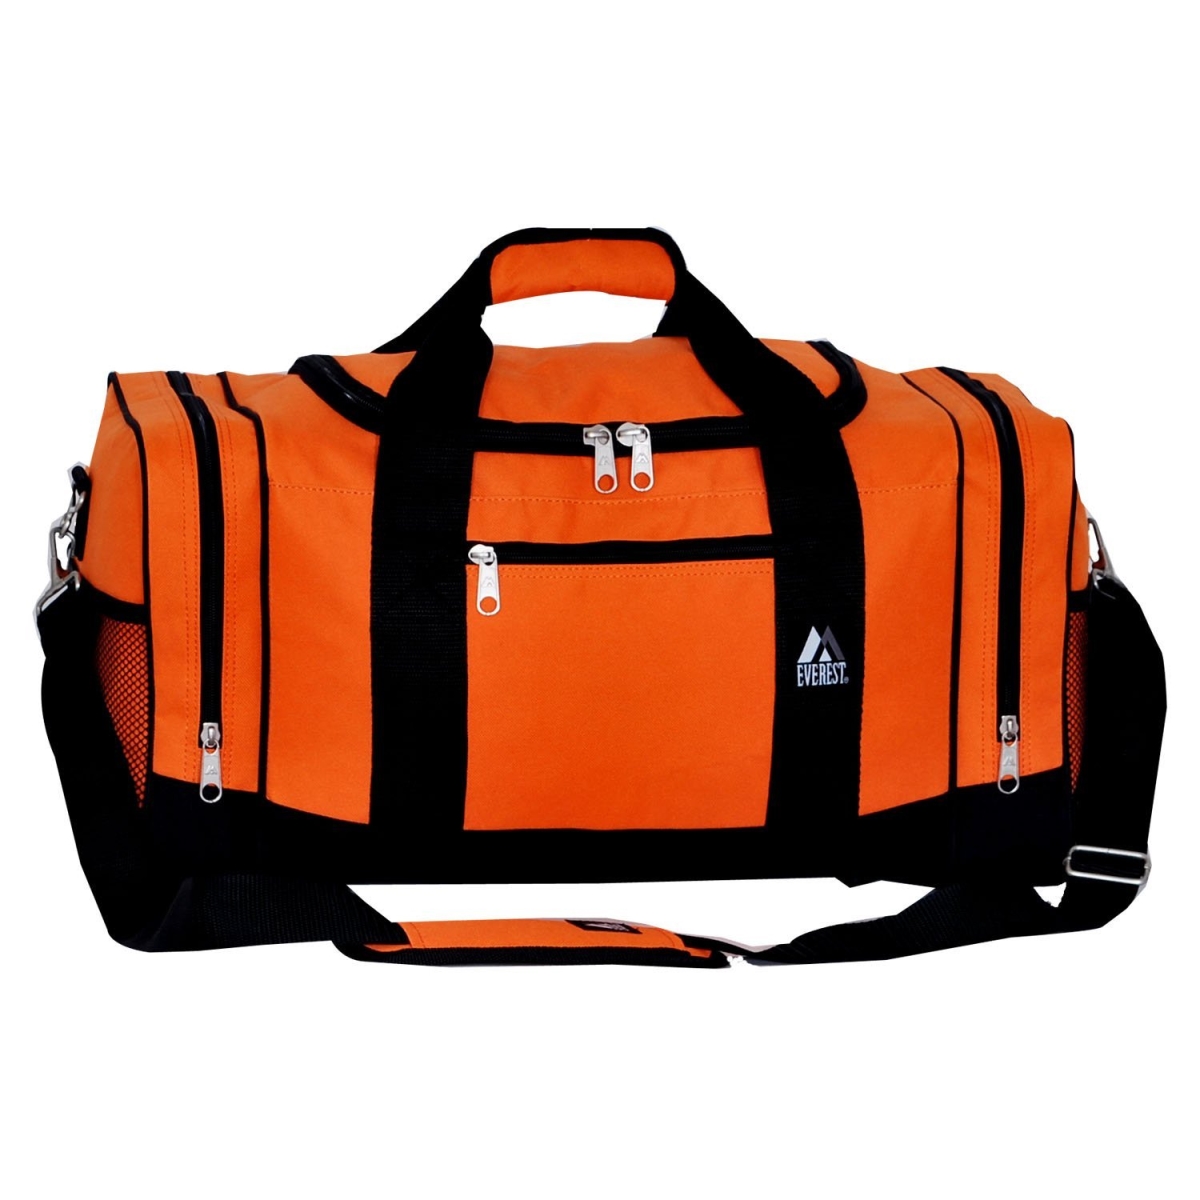 020-og-bk Crossover Duffel Bag - Orange & Black